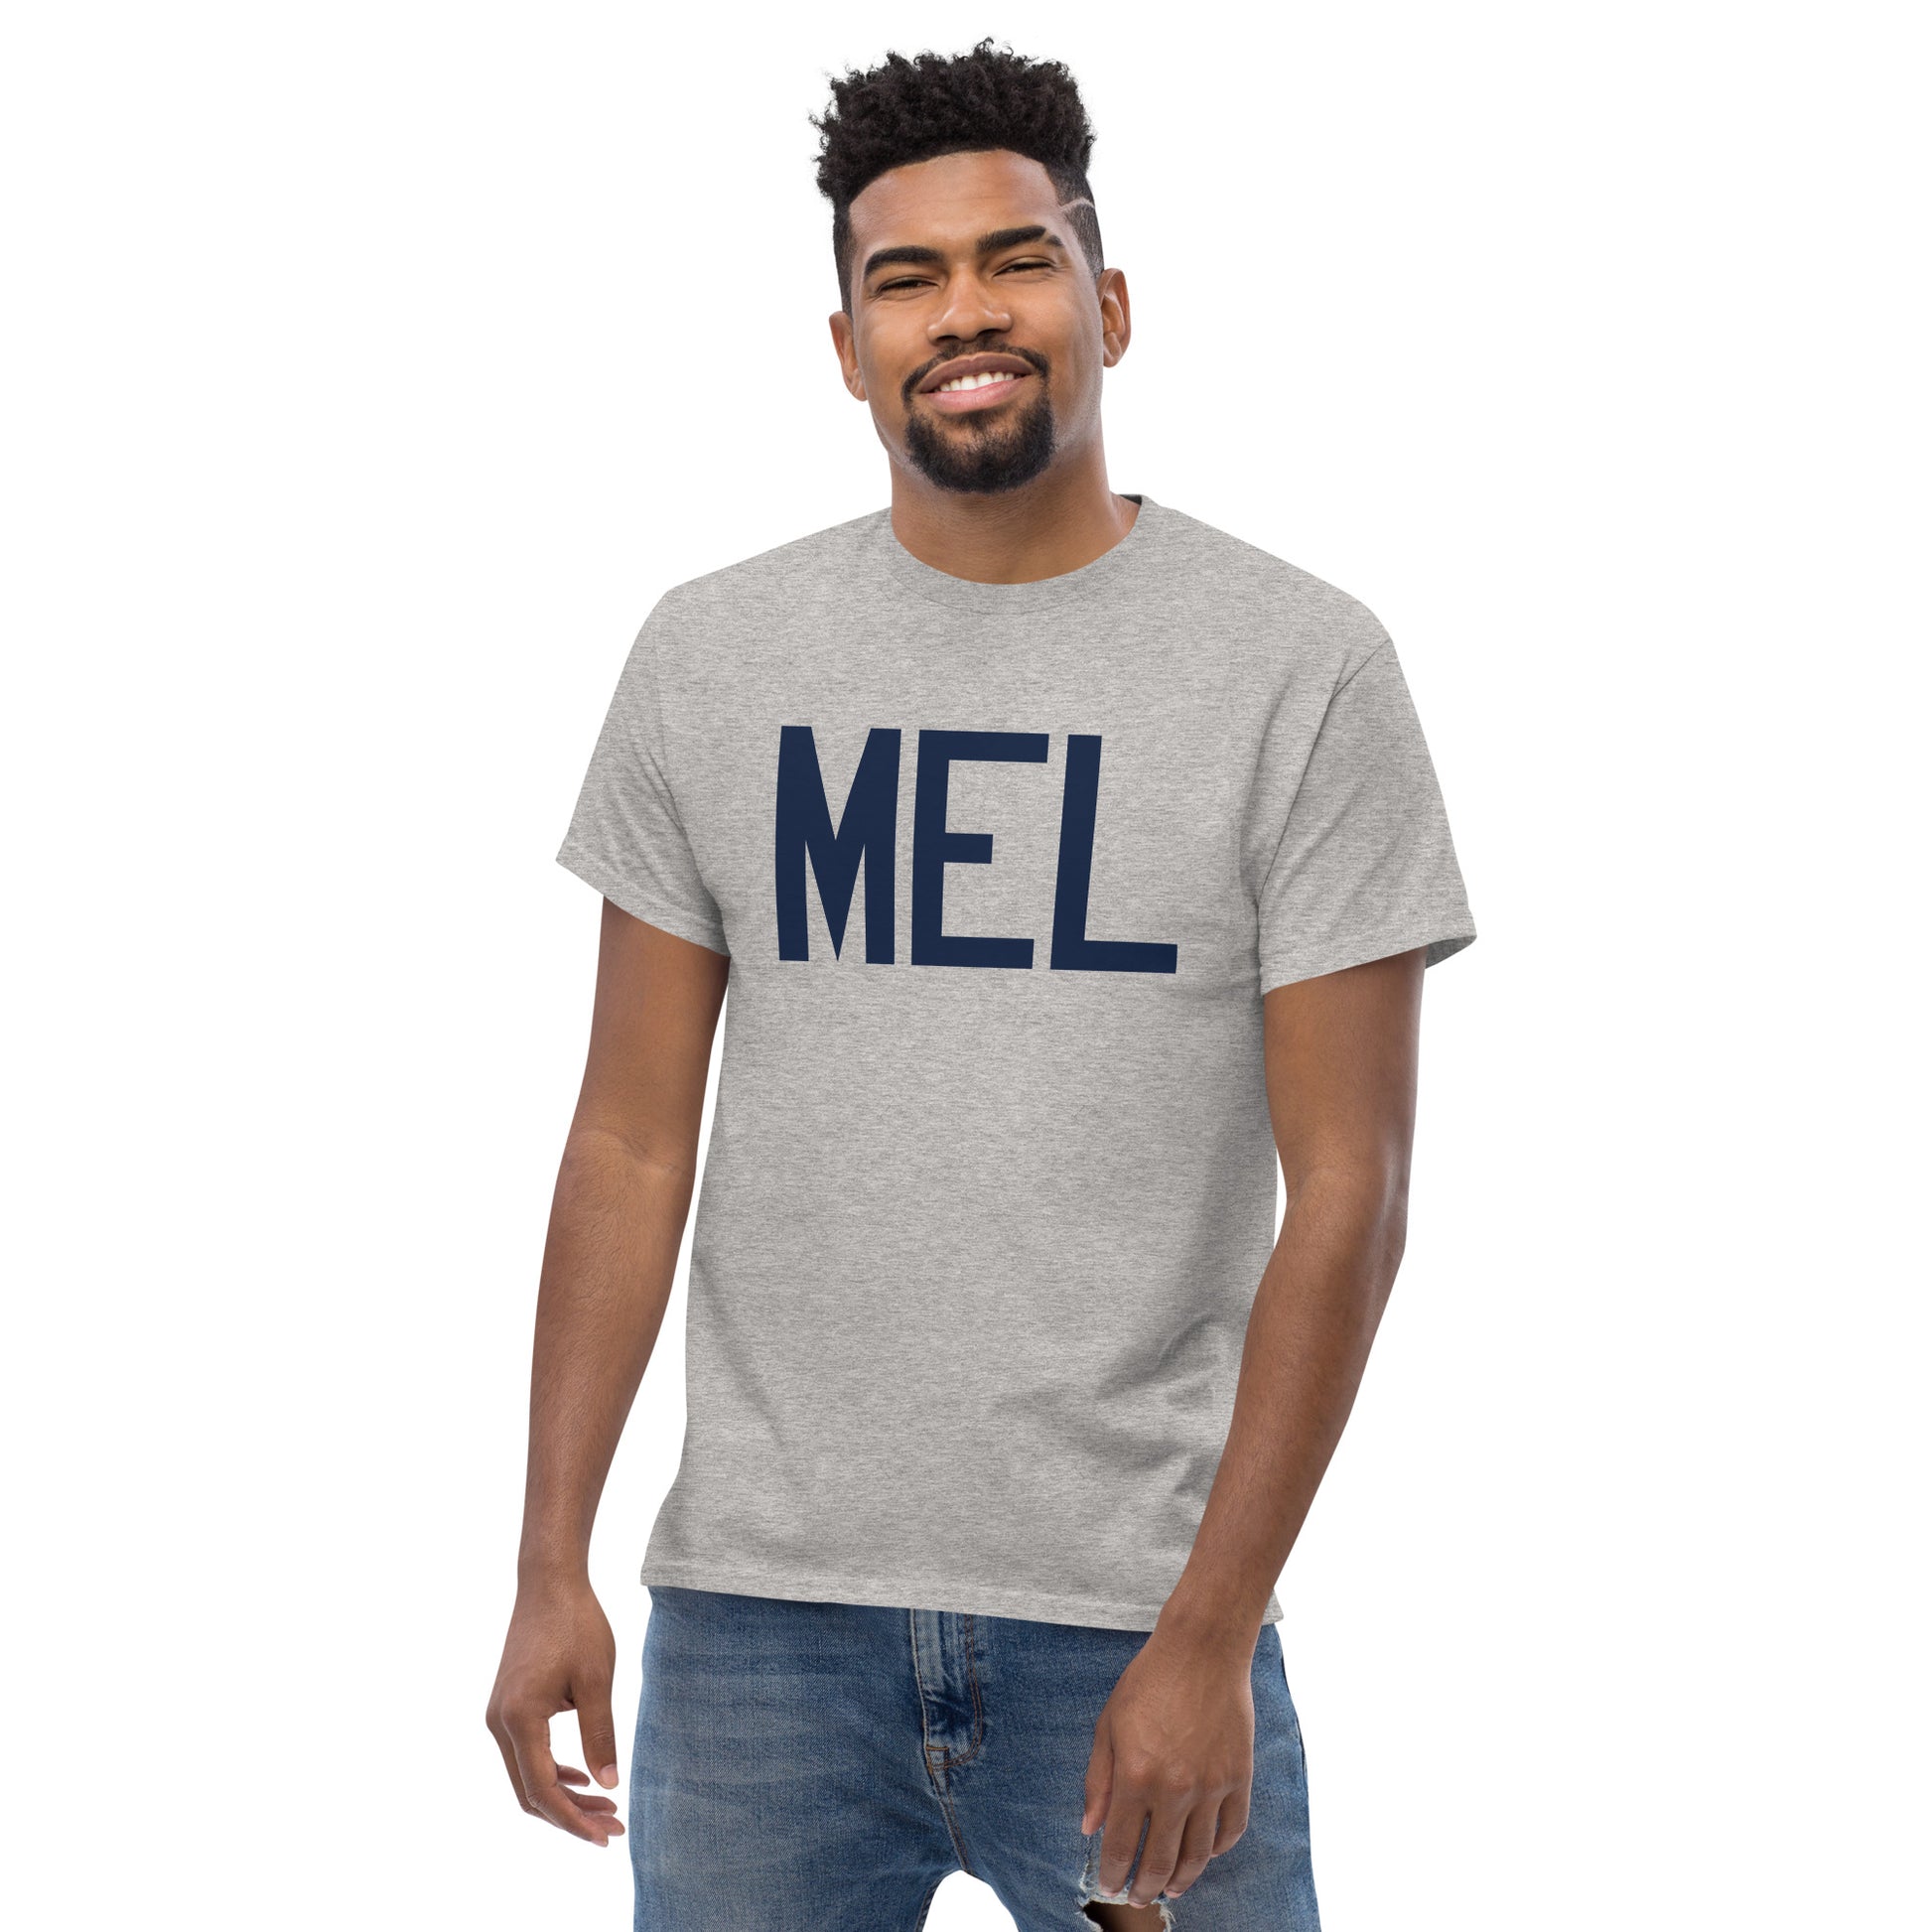 Aviation-Theme Men's T-Shirt - Navy Blue Graphic • MEL Melbourne • YHM Designs - Image 06